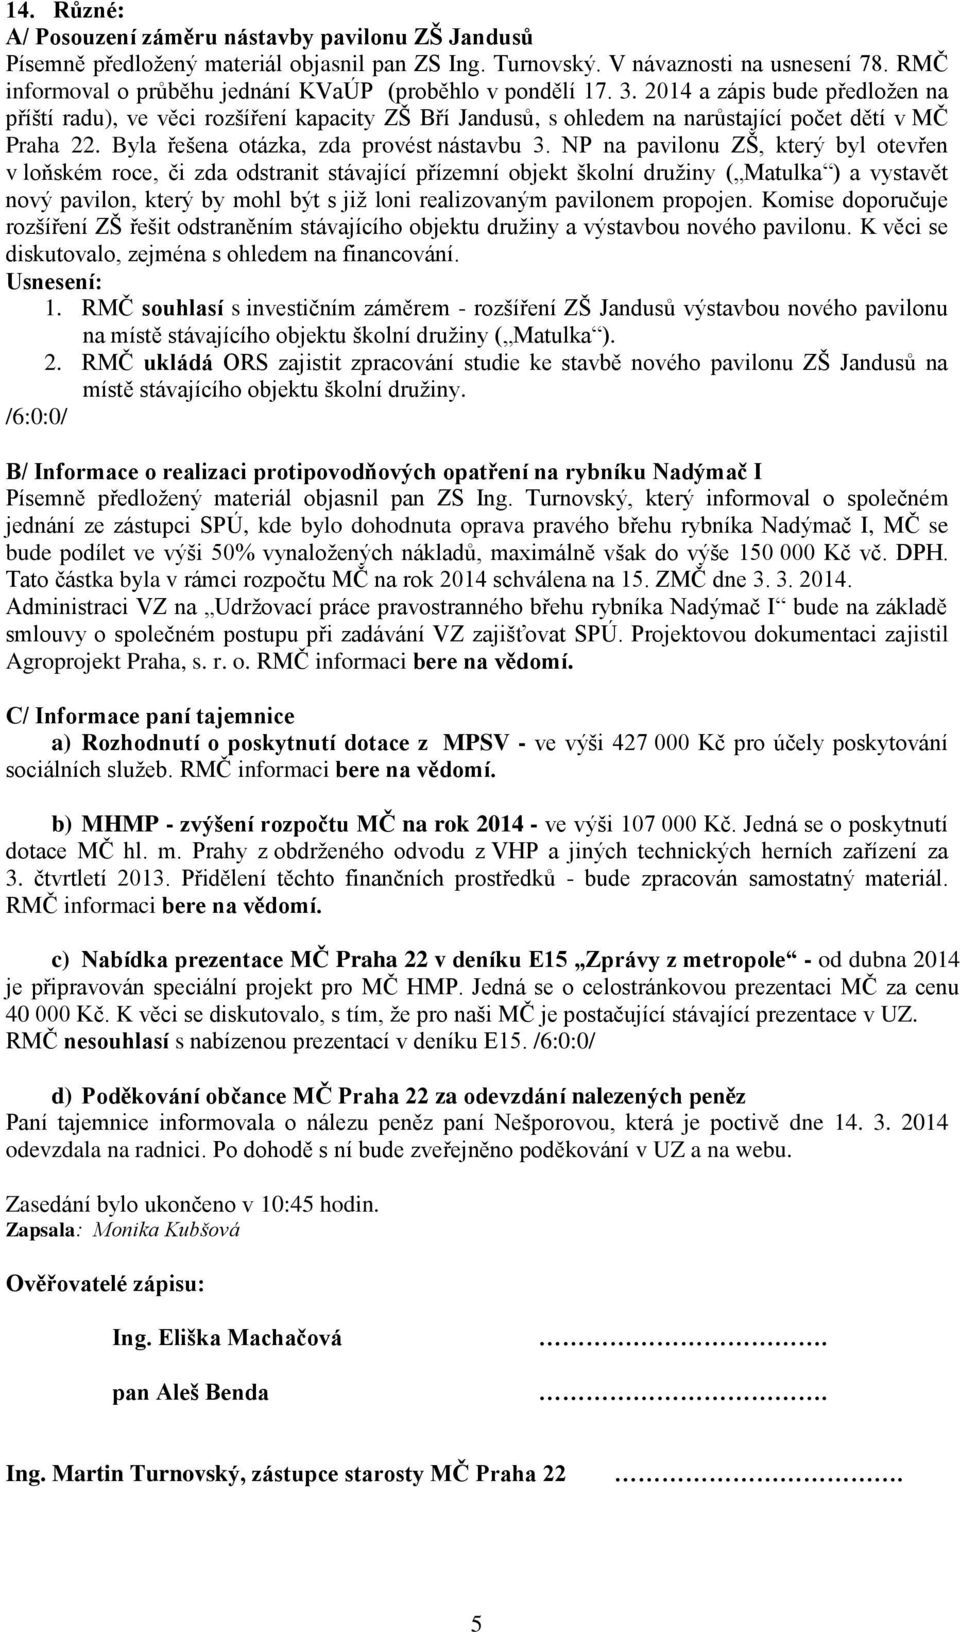 2014 a zápis bude předložen na příští radu), ve věci rozšíření kapacity ZŠ Bří Jandusů, s ohledem na narůstající počet dětí v MČ Praha 22. Byla řešena otázka, zda provést nástavbu 3.